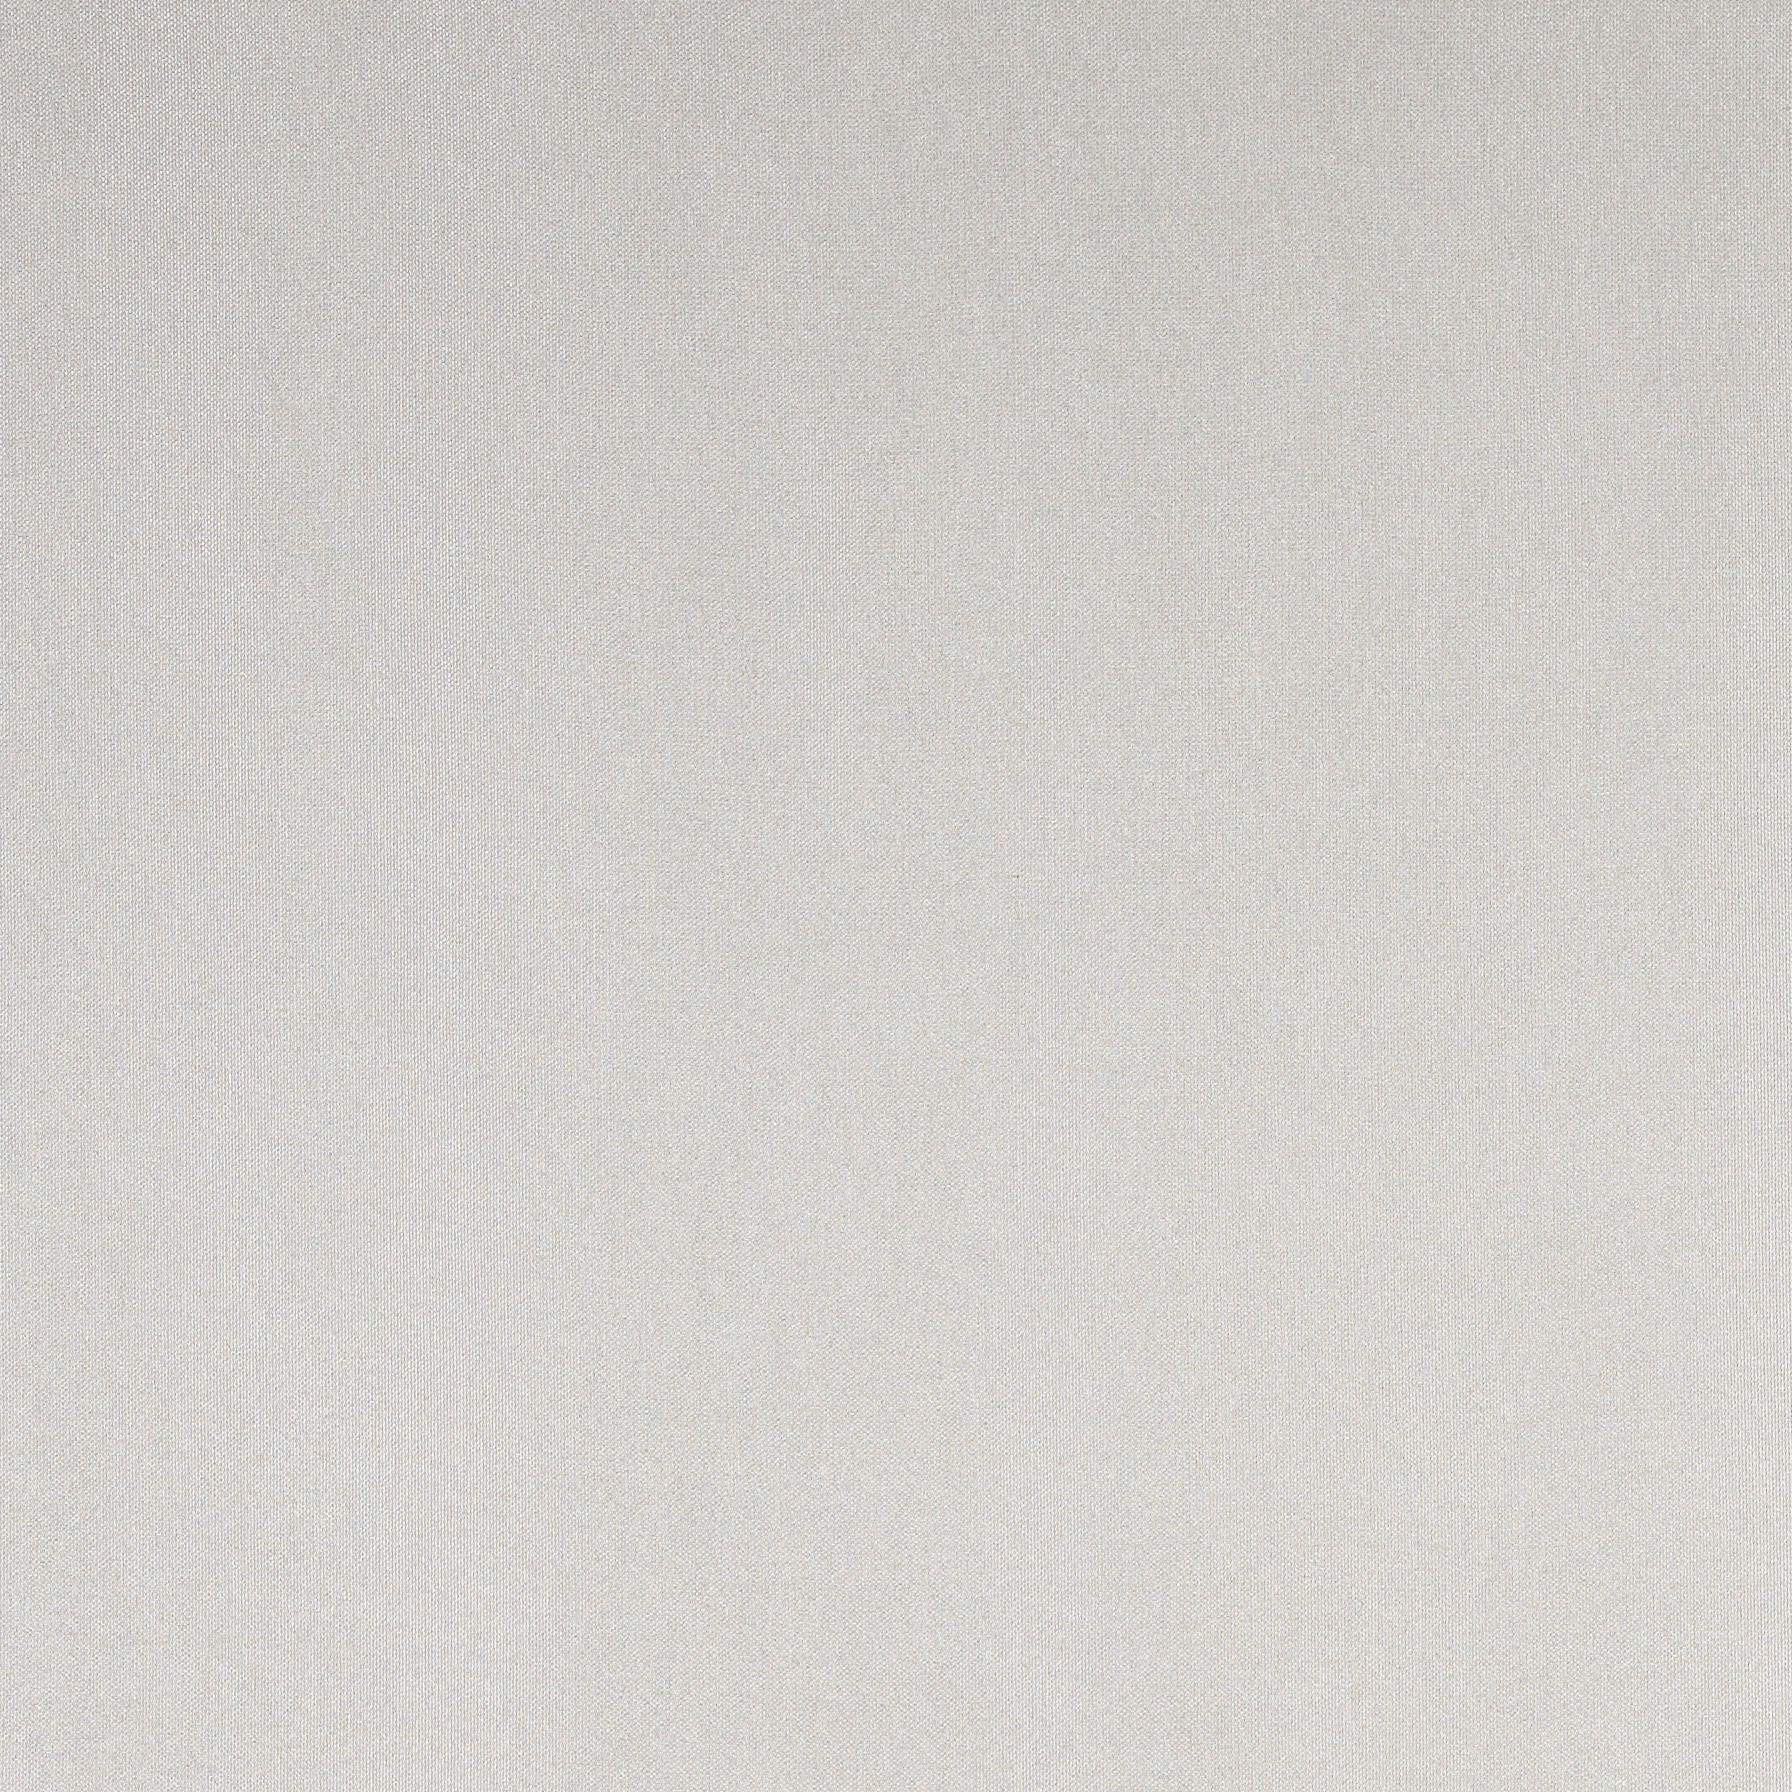 FERTIGVORHANG CAVA black-out (lichtundurchlässig) 140/245 cm   - Sandfarben, KONVENTIONELL, Textil (140/245cm) - Dieter Knoll